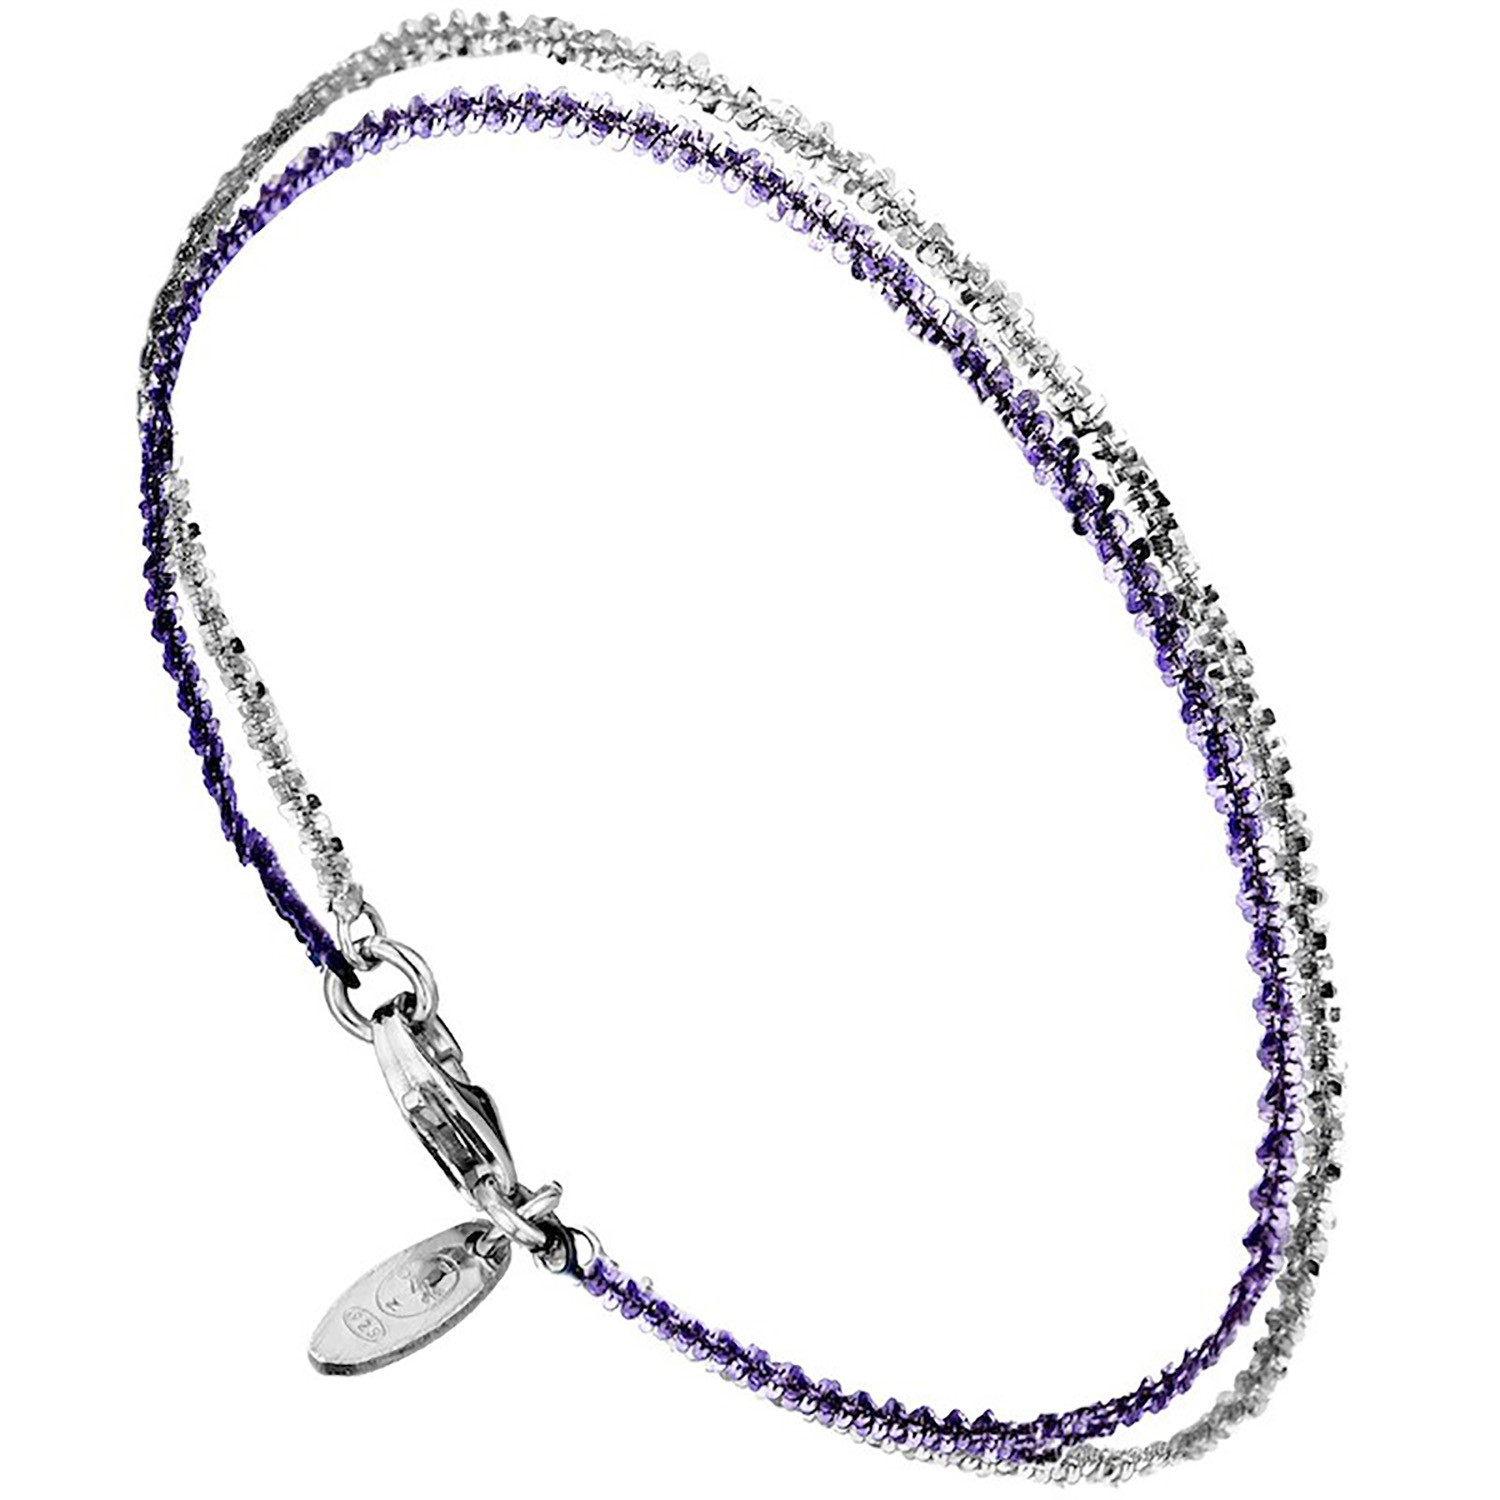 Bracelet Elden argent 925/1000 2 rangs blanc/violet
collection Catch the Rainbow